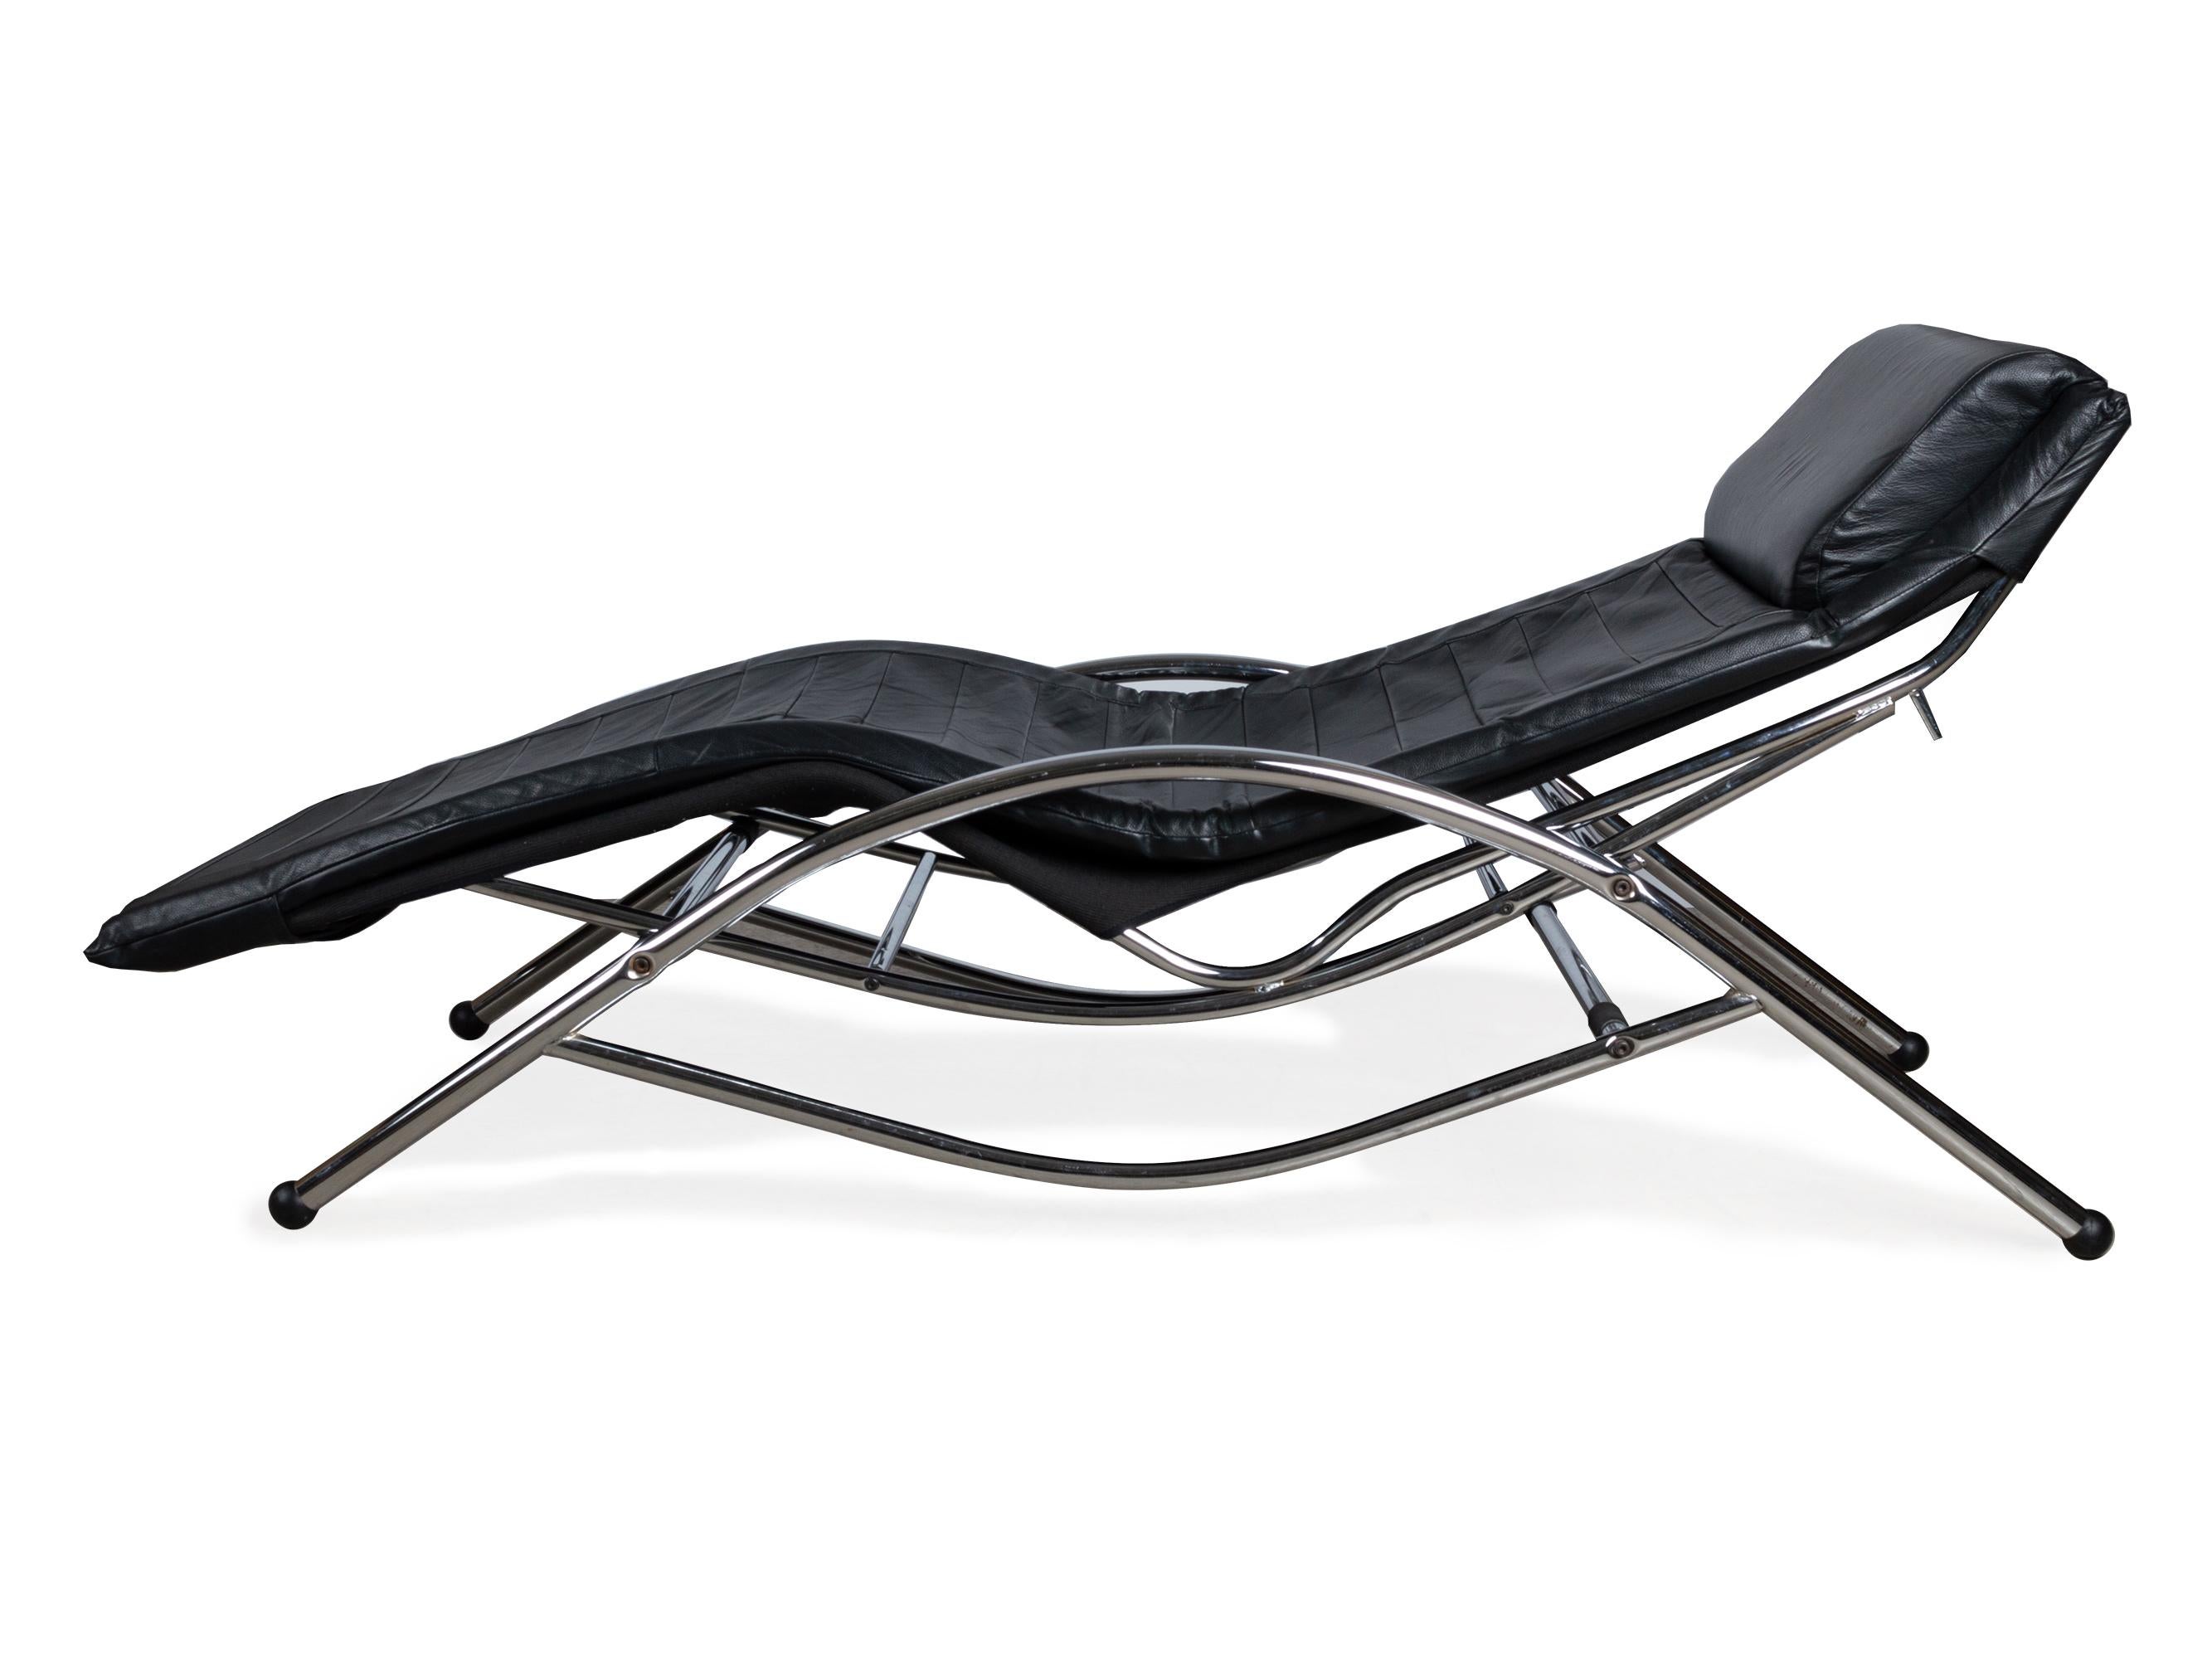 Chaise longue en tube d'acier chromé et cuir noir, avec mécanisme de basculement. Le cadre tubulaire chromé peut être glissé dans différentes positions sur la base, ce qui permet de passer d'une position assise détendue à une position de sommeil. Le